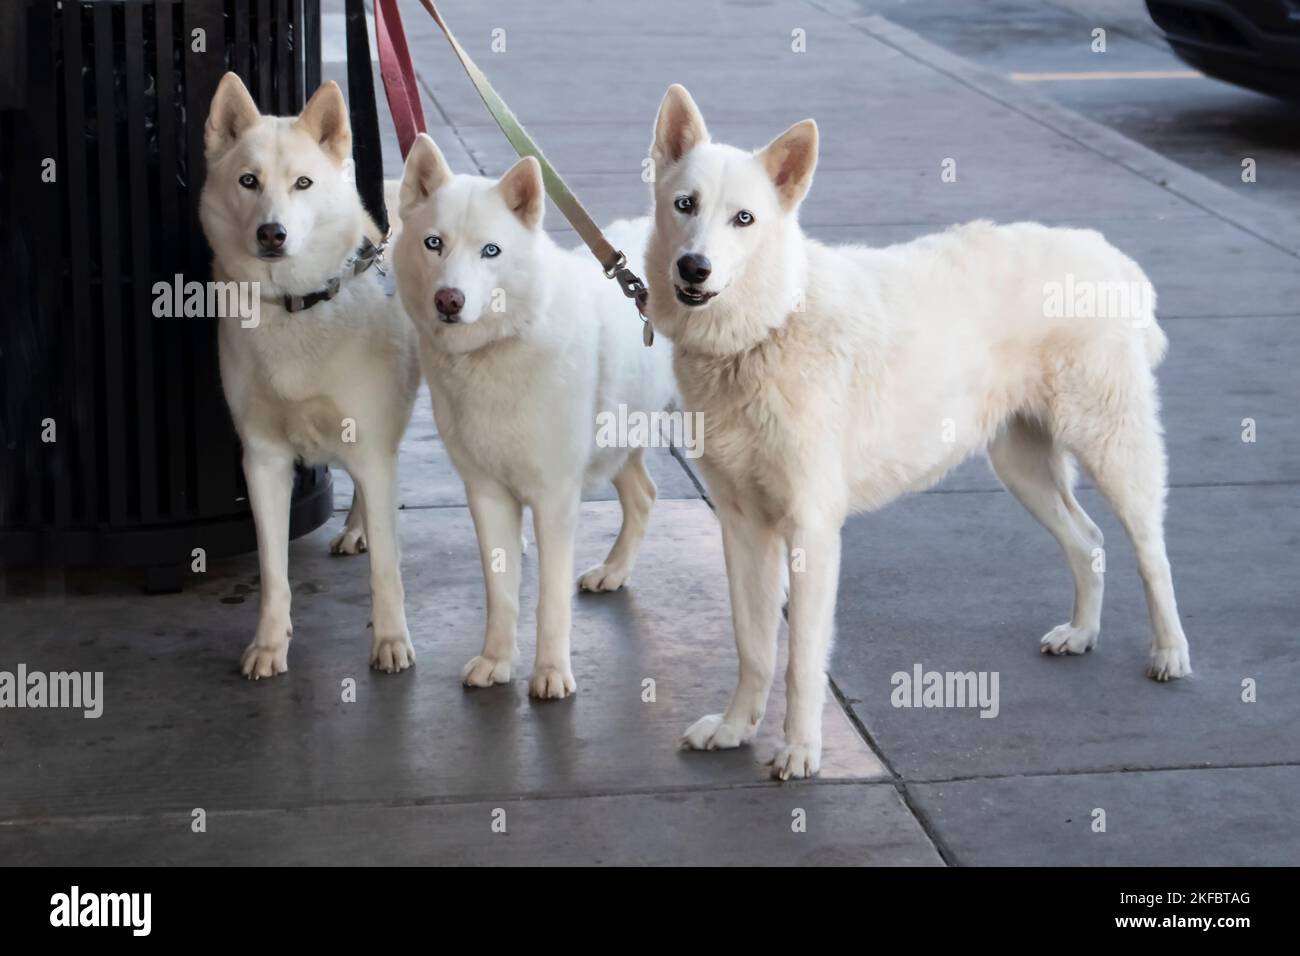 Drei wunderschöne weiße Hunde mit eisblauen Augen, die vor einem Laden an einen Mülleimer gebunden sind, während ihre Meistergeschäfte direkt auf die Kamera blicken Stockfoto